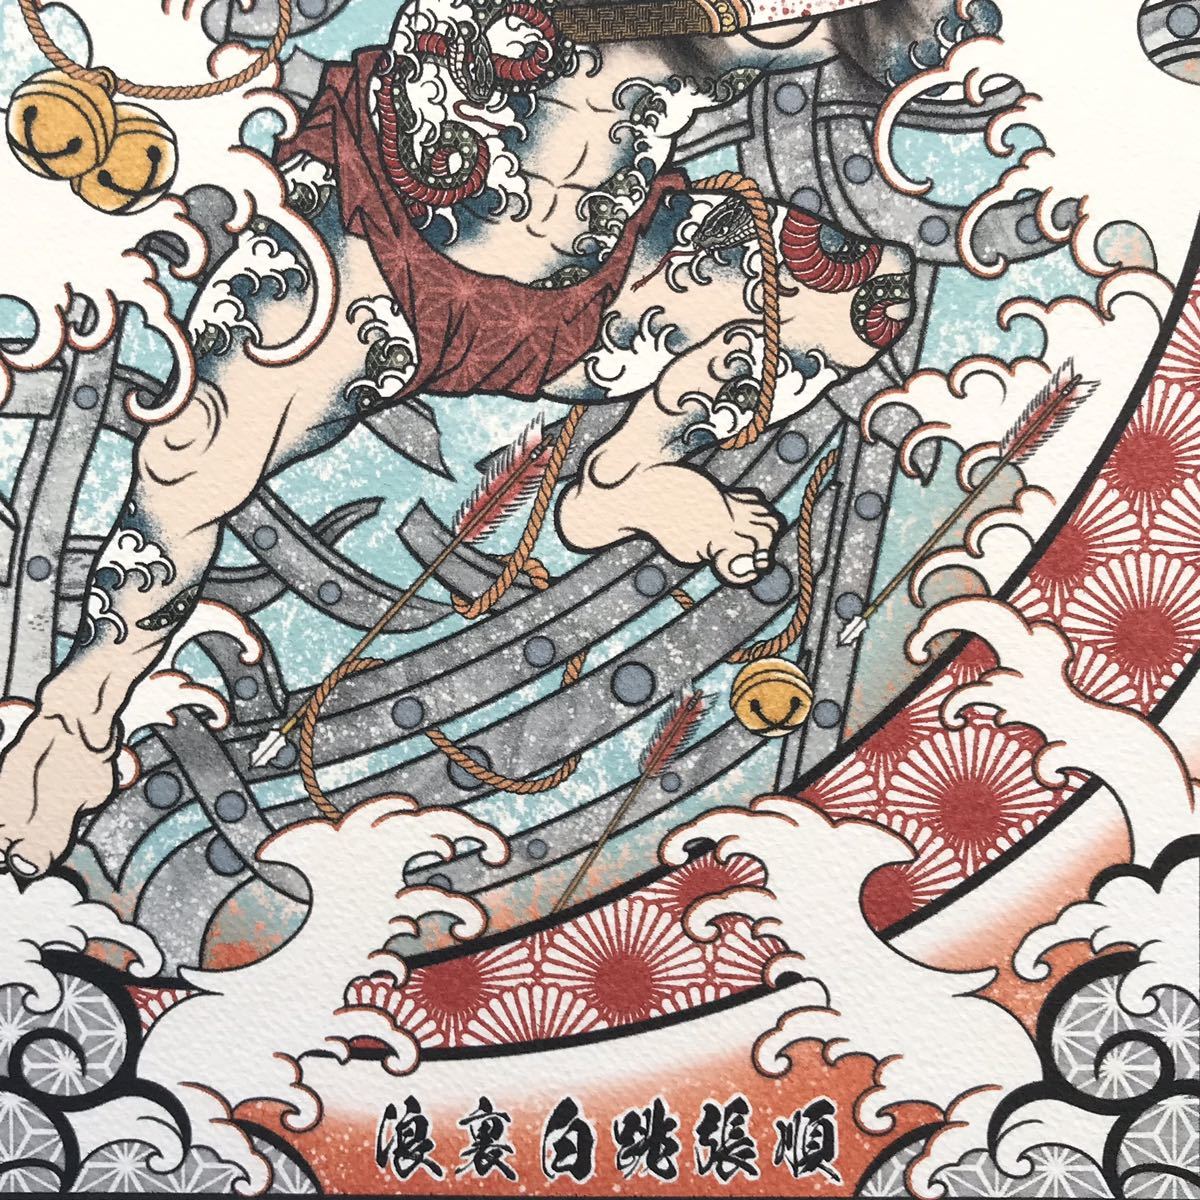 刺青 画 タトゥー 和彫り 尾九 カスタム 浮世絵 水滸伝 張順 水門破りの図 A3サイズ 額縁 フレーム付き イラスト アートフレームの画像6